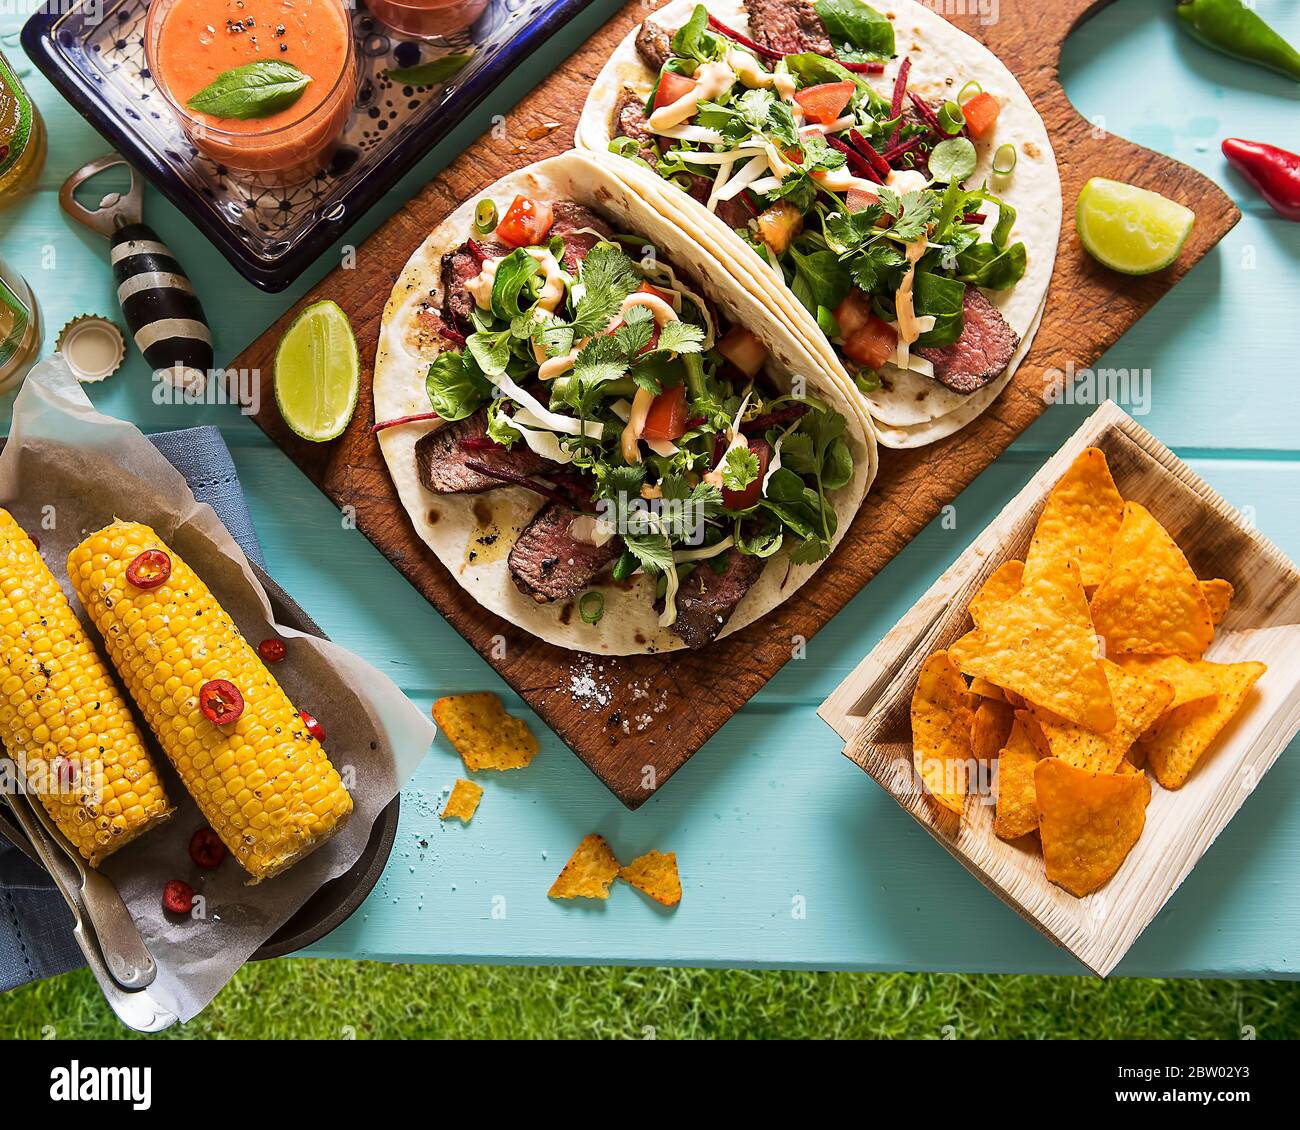 Fiesta Mexicana! Mexikanische Fiesta im Freien: Tortilla Chips, Rindfleisch Enchiladas mit Salat, mexikanischer Mais mit roten Chili Paprika, Gazpacho-Suppe Stockfoto